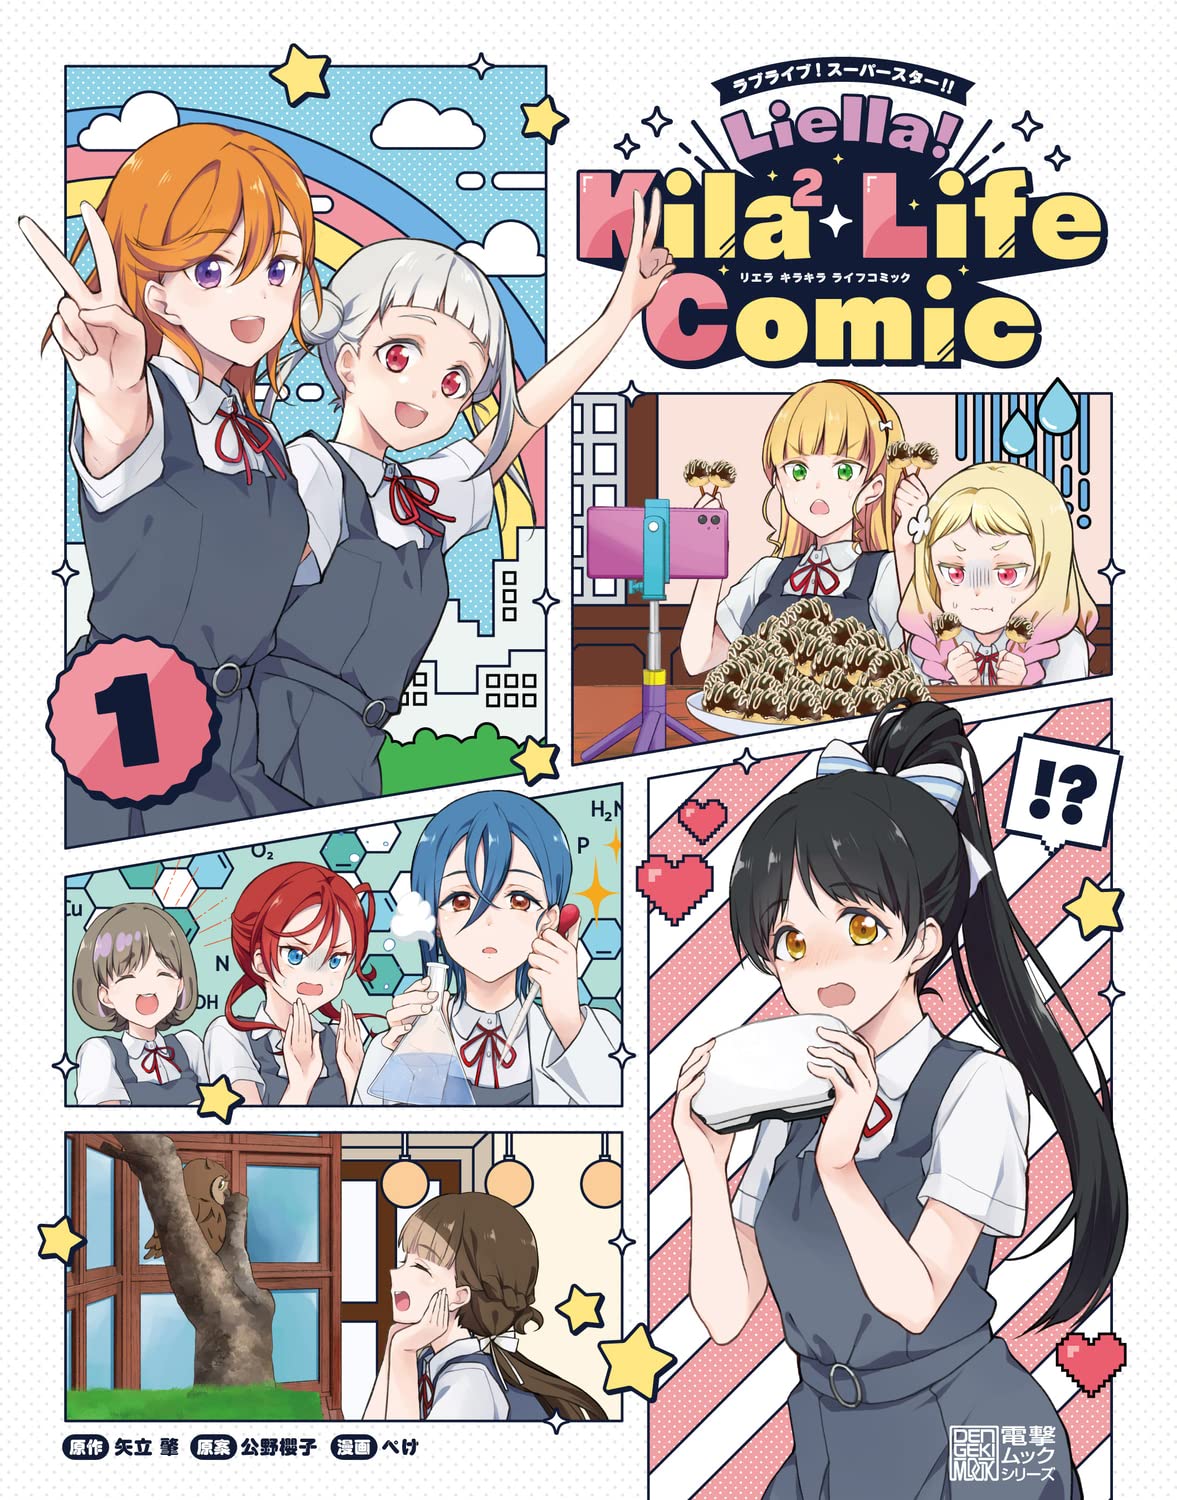 ラブライブ!ス-パ-スタ-!! Liella! Kila2 Life Comic(1) (電擊ムックシリ-ズ)